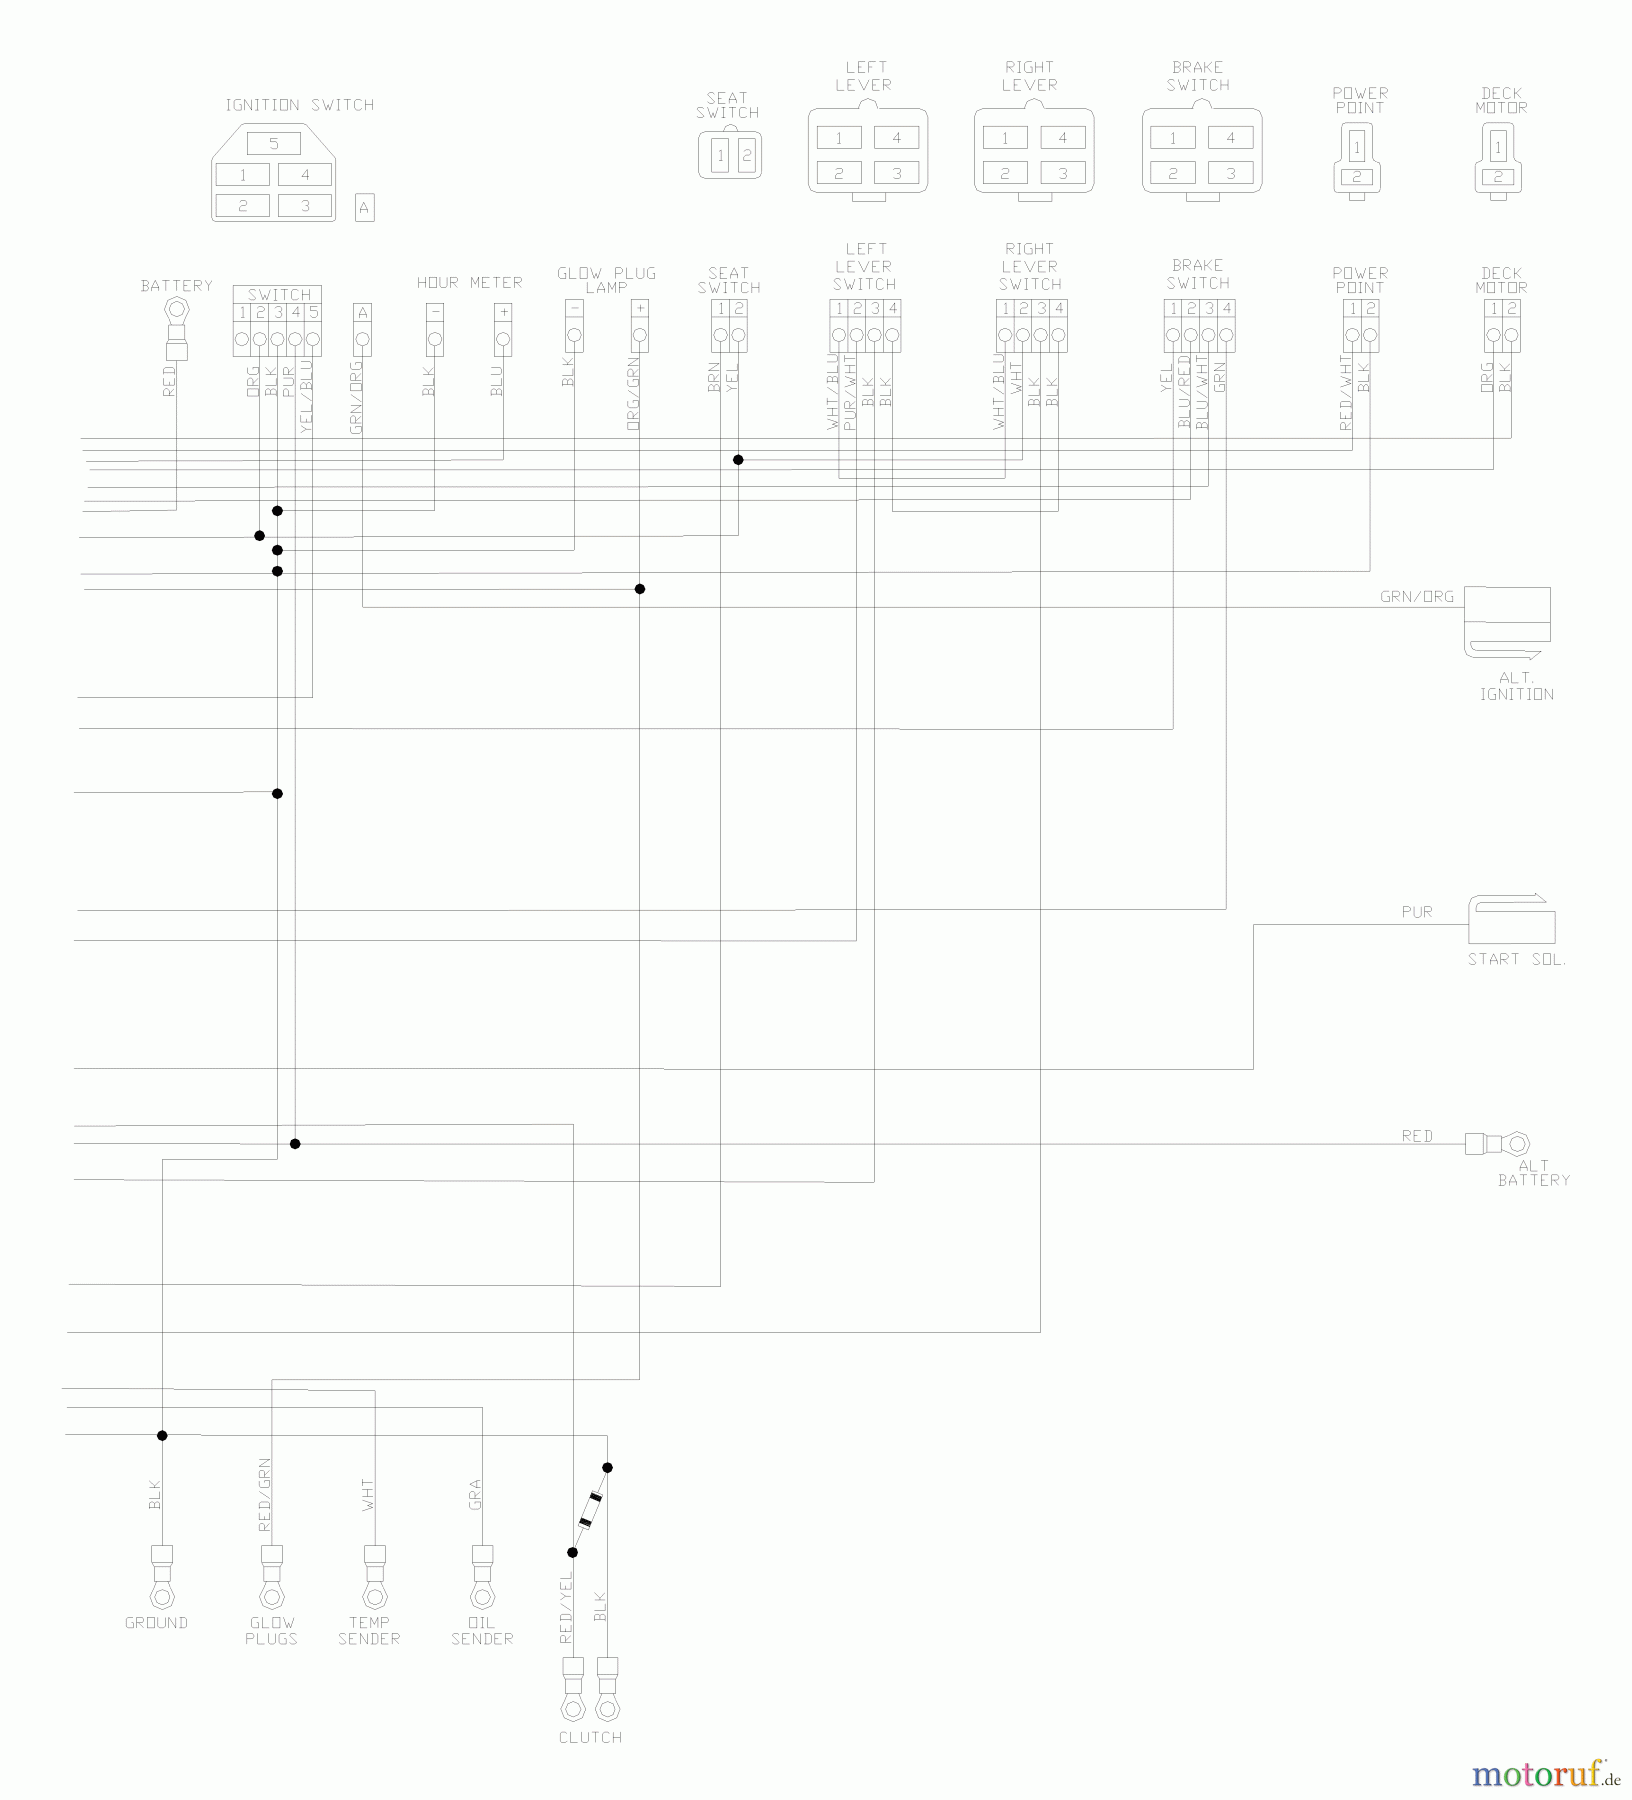  Husqvarna Nullwendekreismäher, Zero-Turn BZ 6134 D (968999214) - Husqvarna Zero-Turn Mower (2004-11 & After) (SN: 033600000 & Up) Wiring Schematic (Part 2)